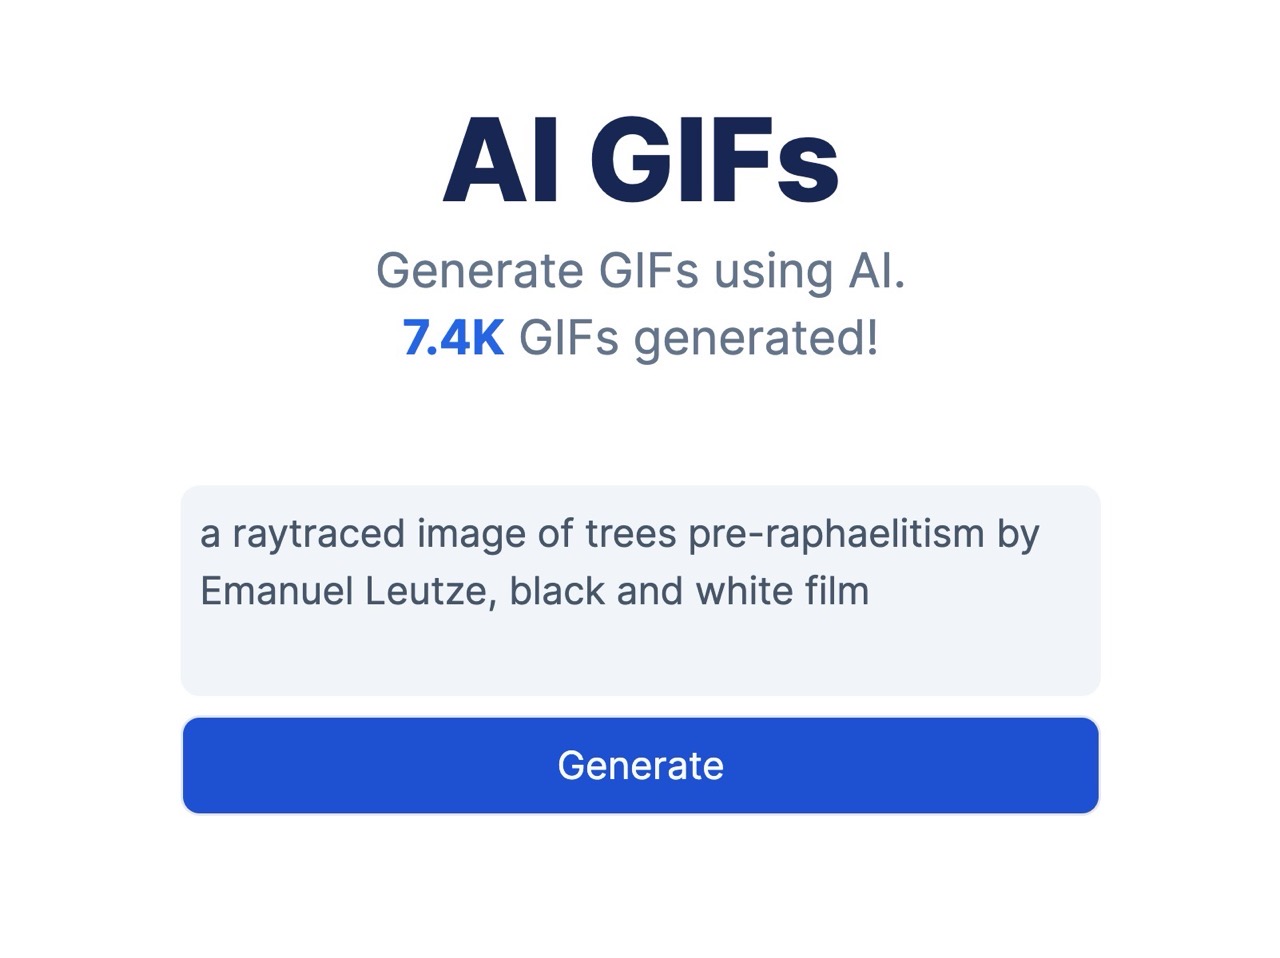 快速製作梗圖！AI GIFs 僅需文字描述即可創造獨特 GIF 動態圖